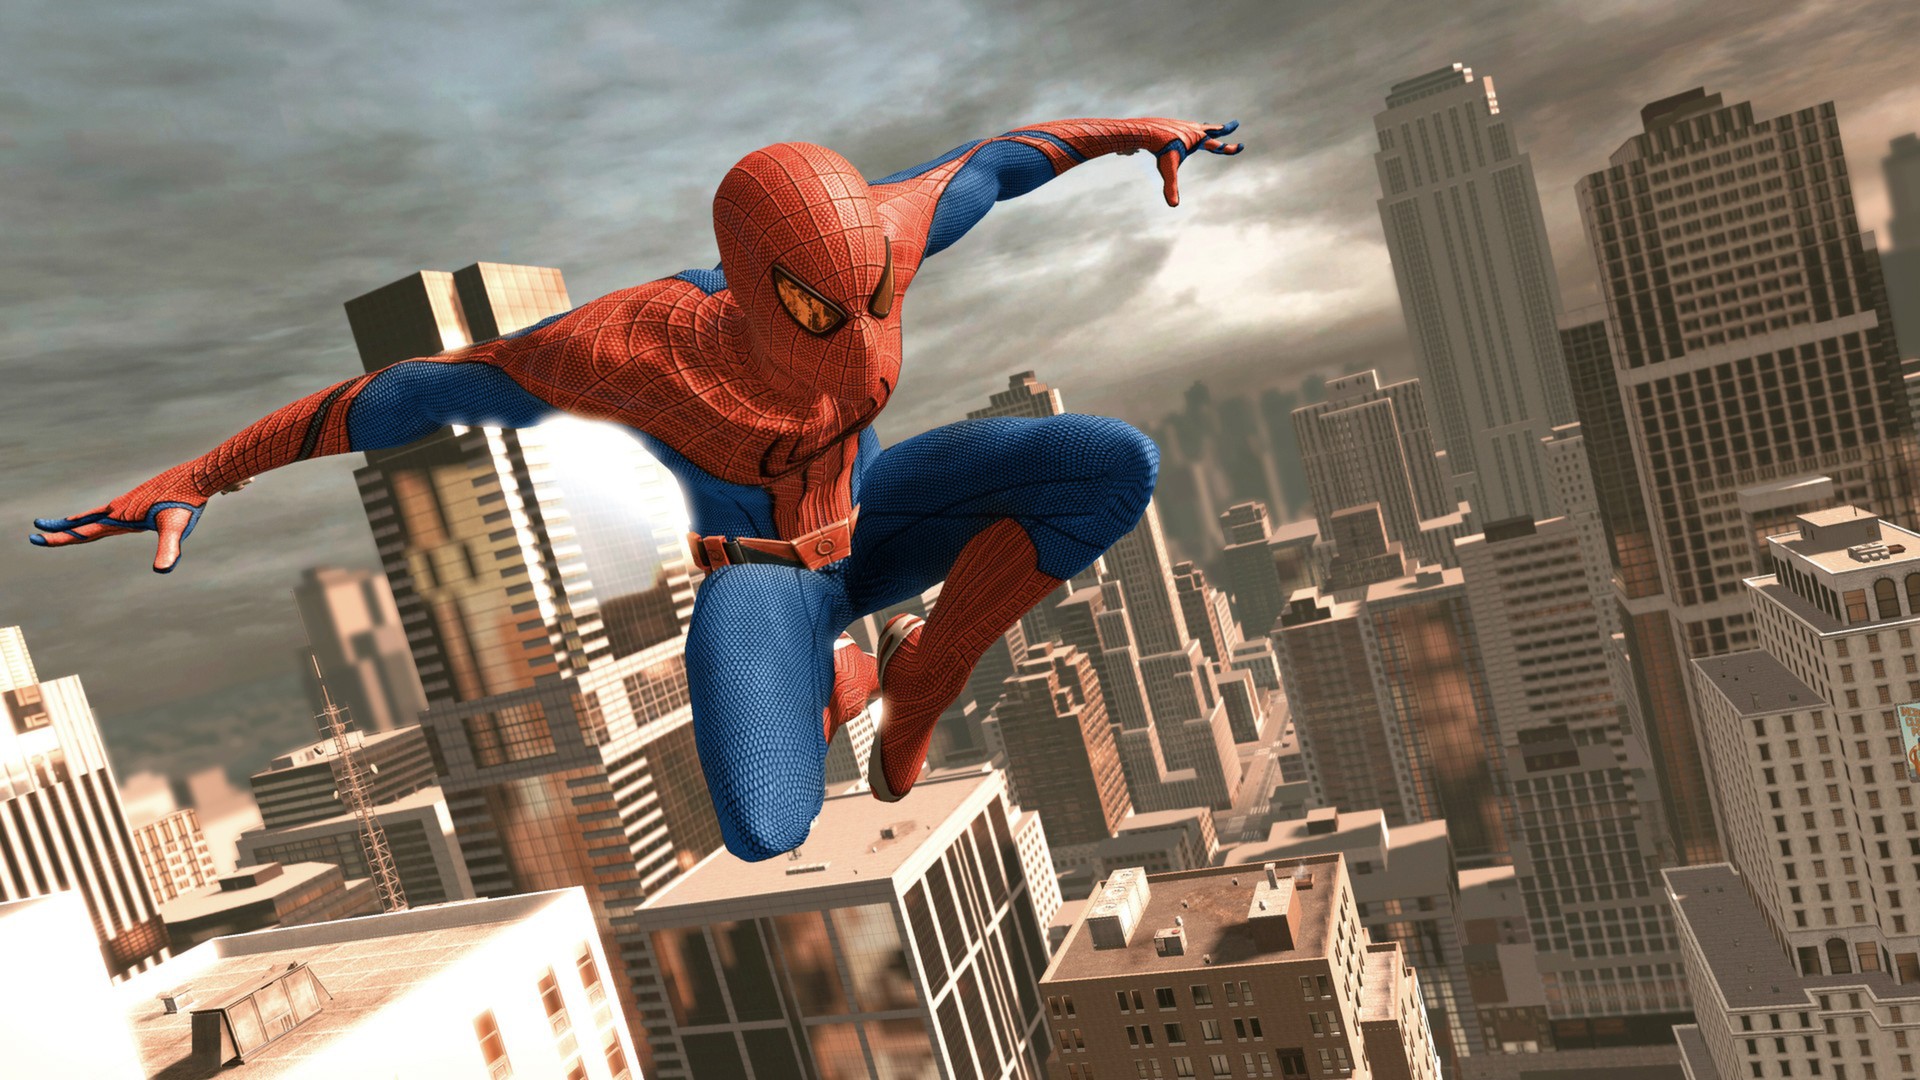  لعبة الأكشن والأثارة الشهيرة The Amazing Spider-Man Ss_de2795fef425c3b166ec529cca3a45a57bc2e6ca.1920x1080